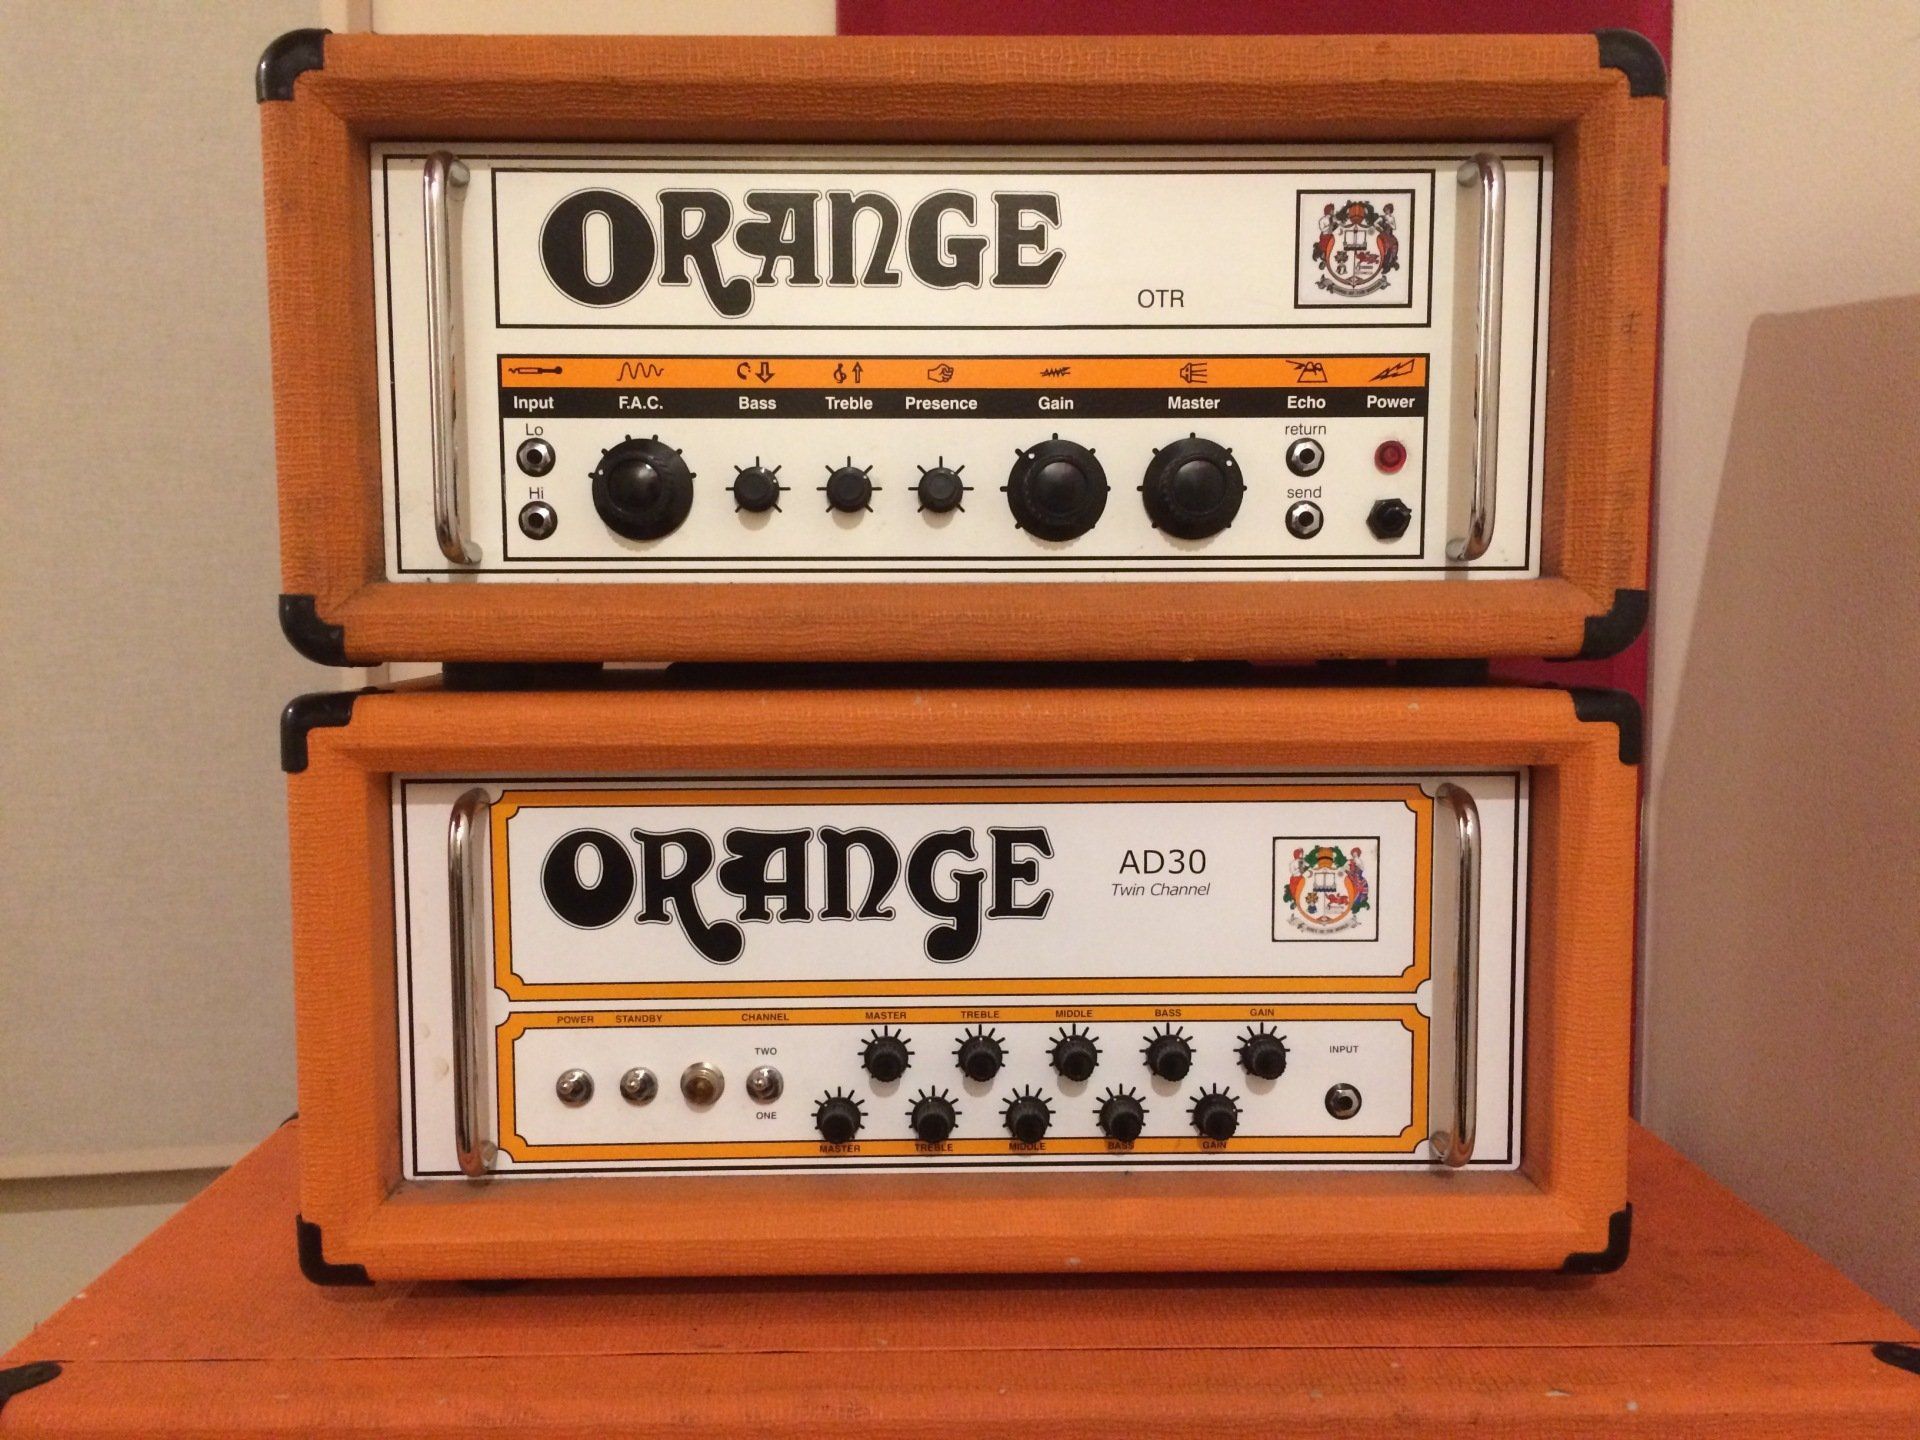 Orange OTR & Orange AD30 at New Cut Studios Bristol